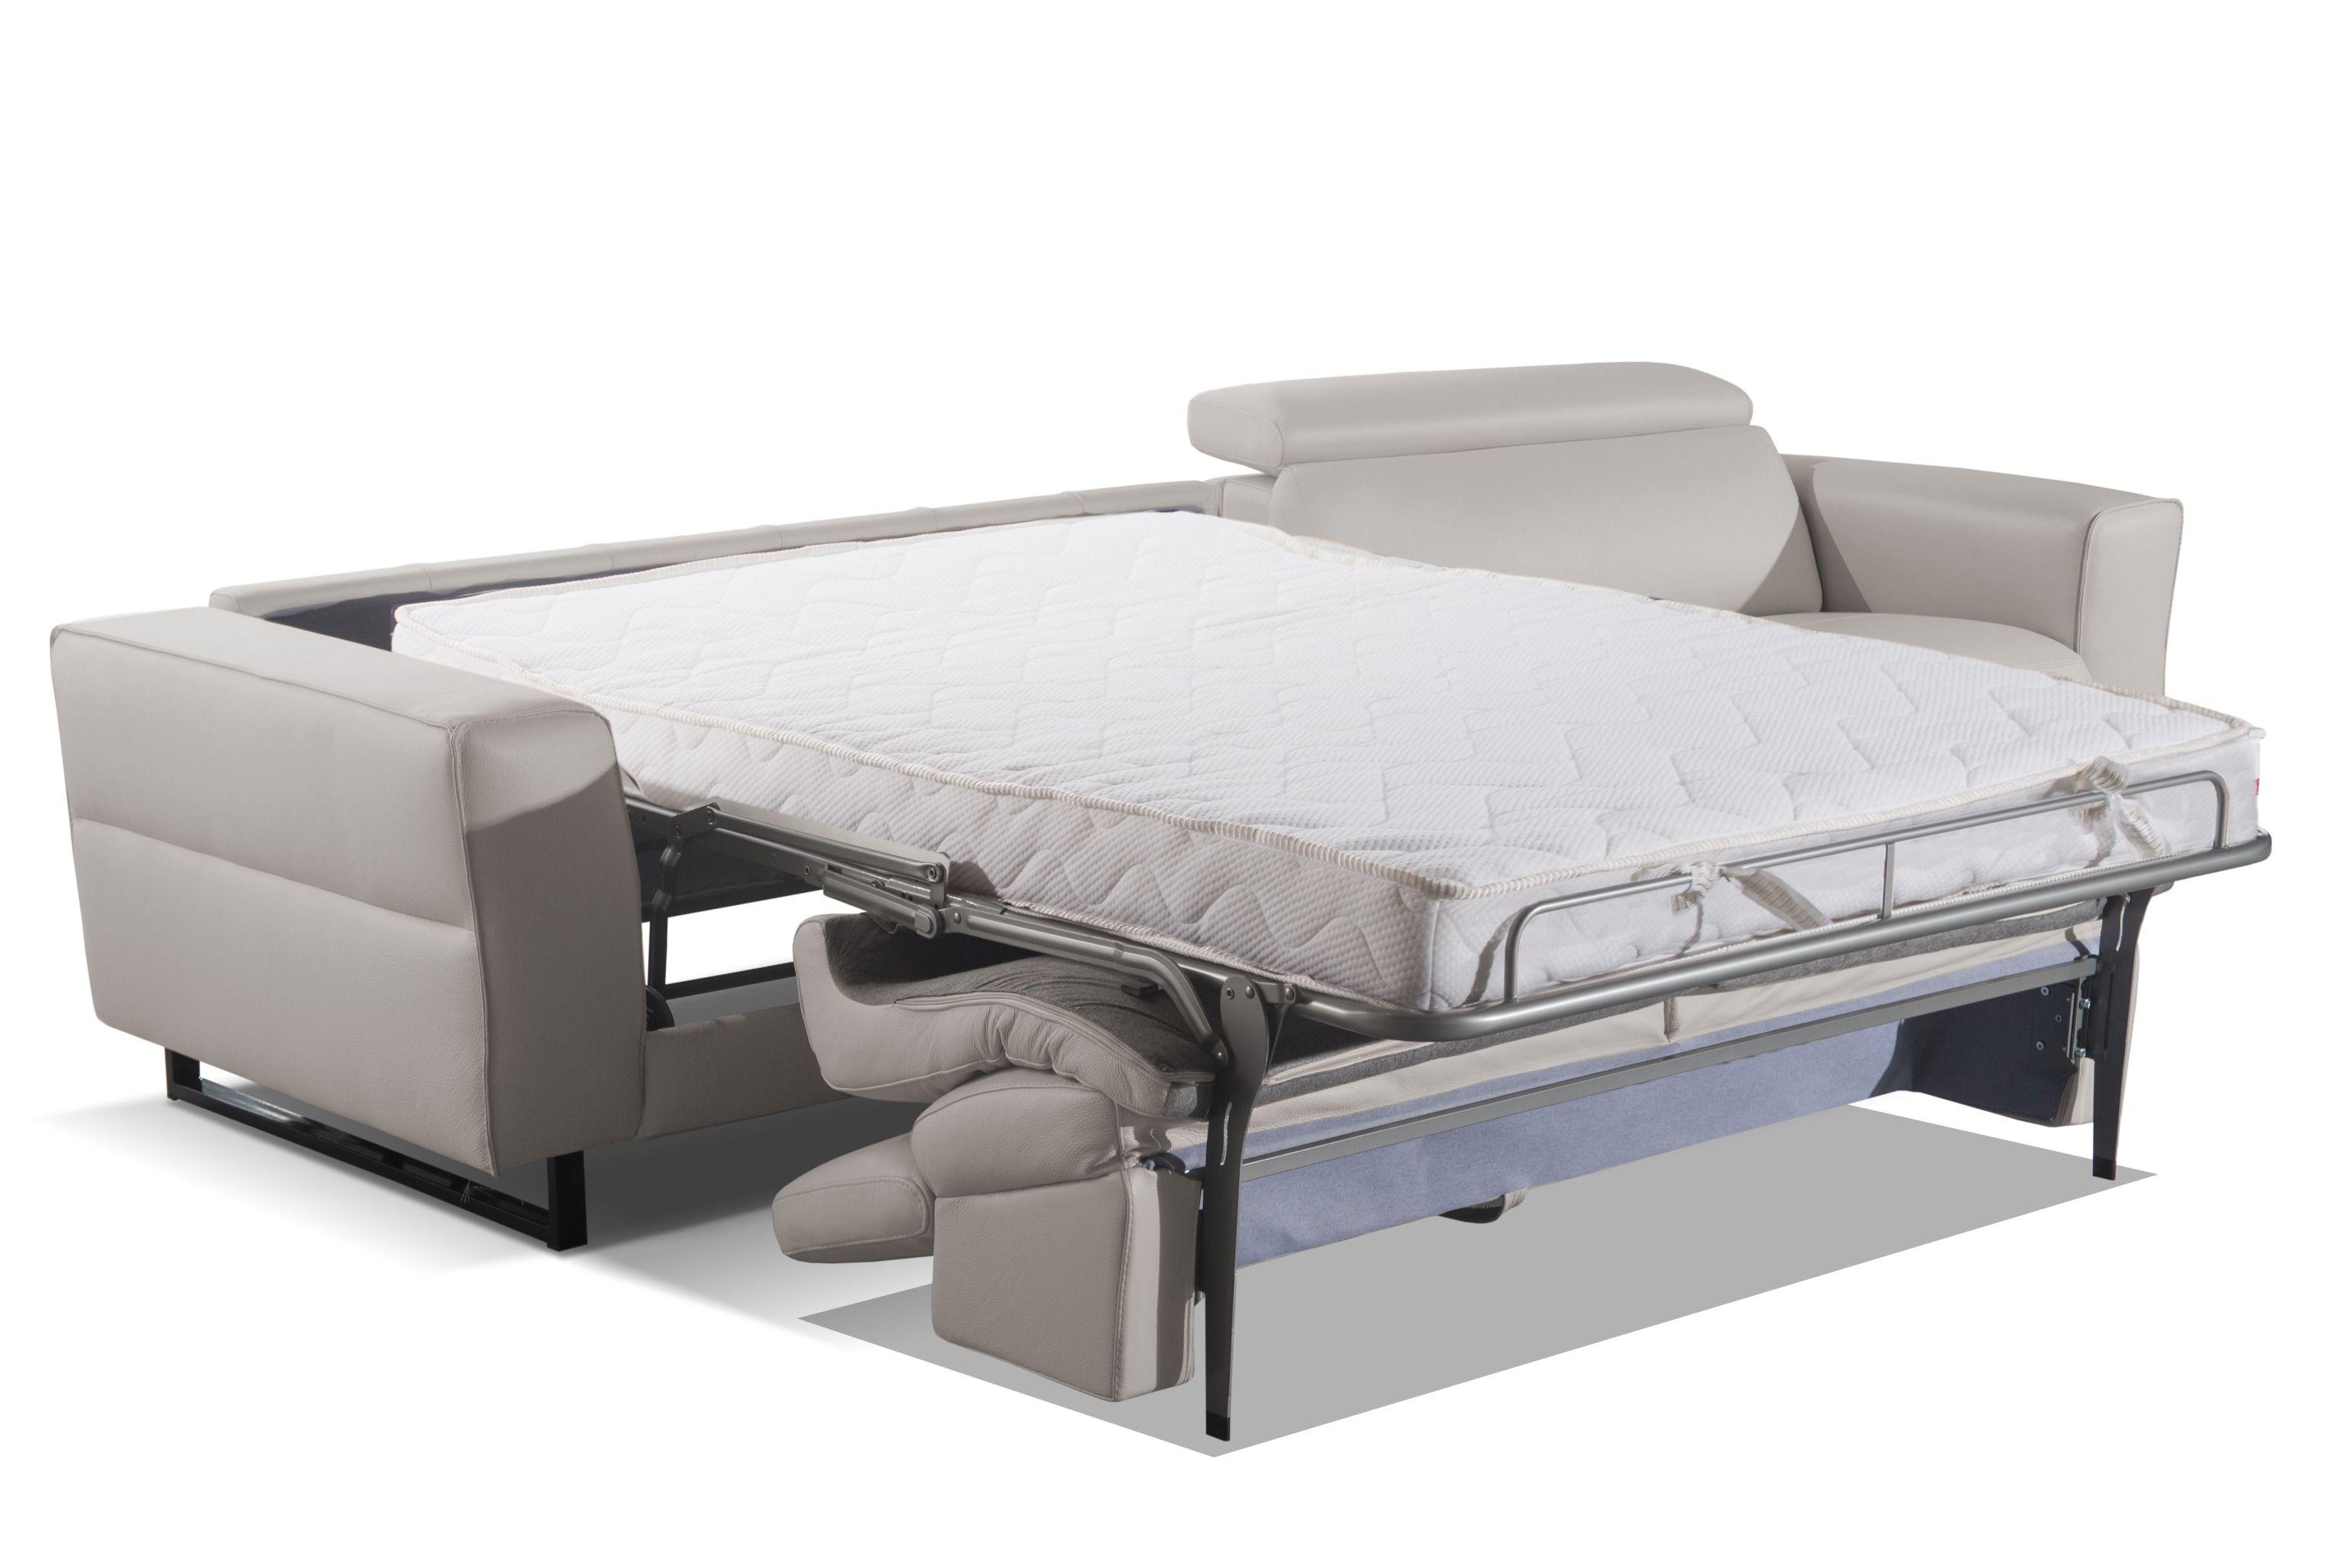 

    
VIG Furniture VGDDSNOOKER Sofa bed White/Gray VGDDSNOOKER
